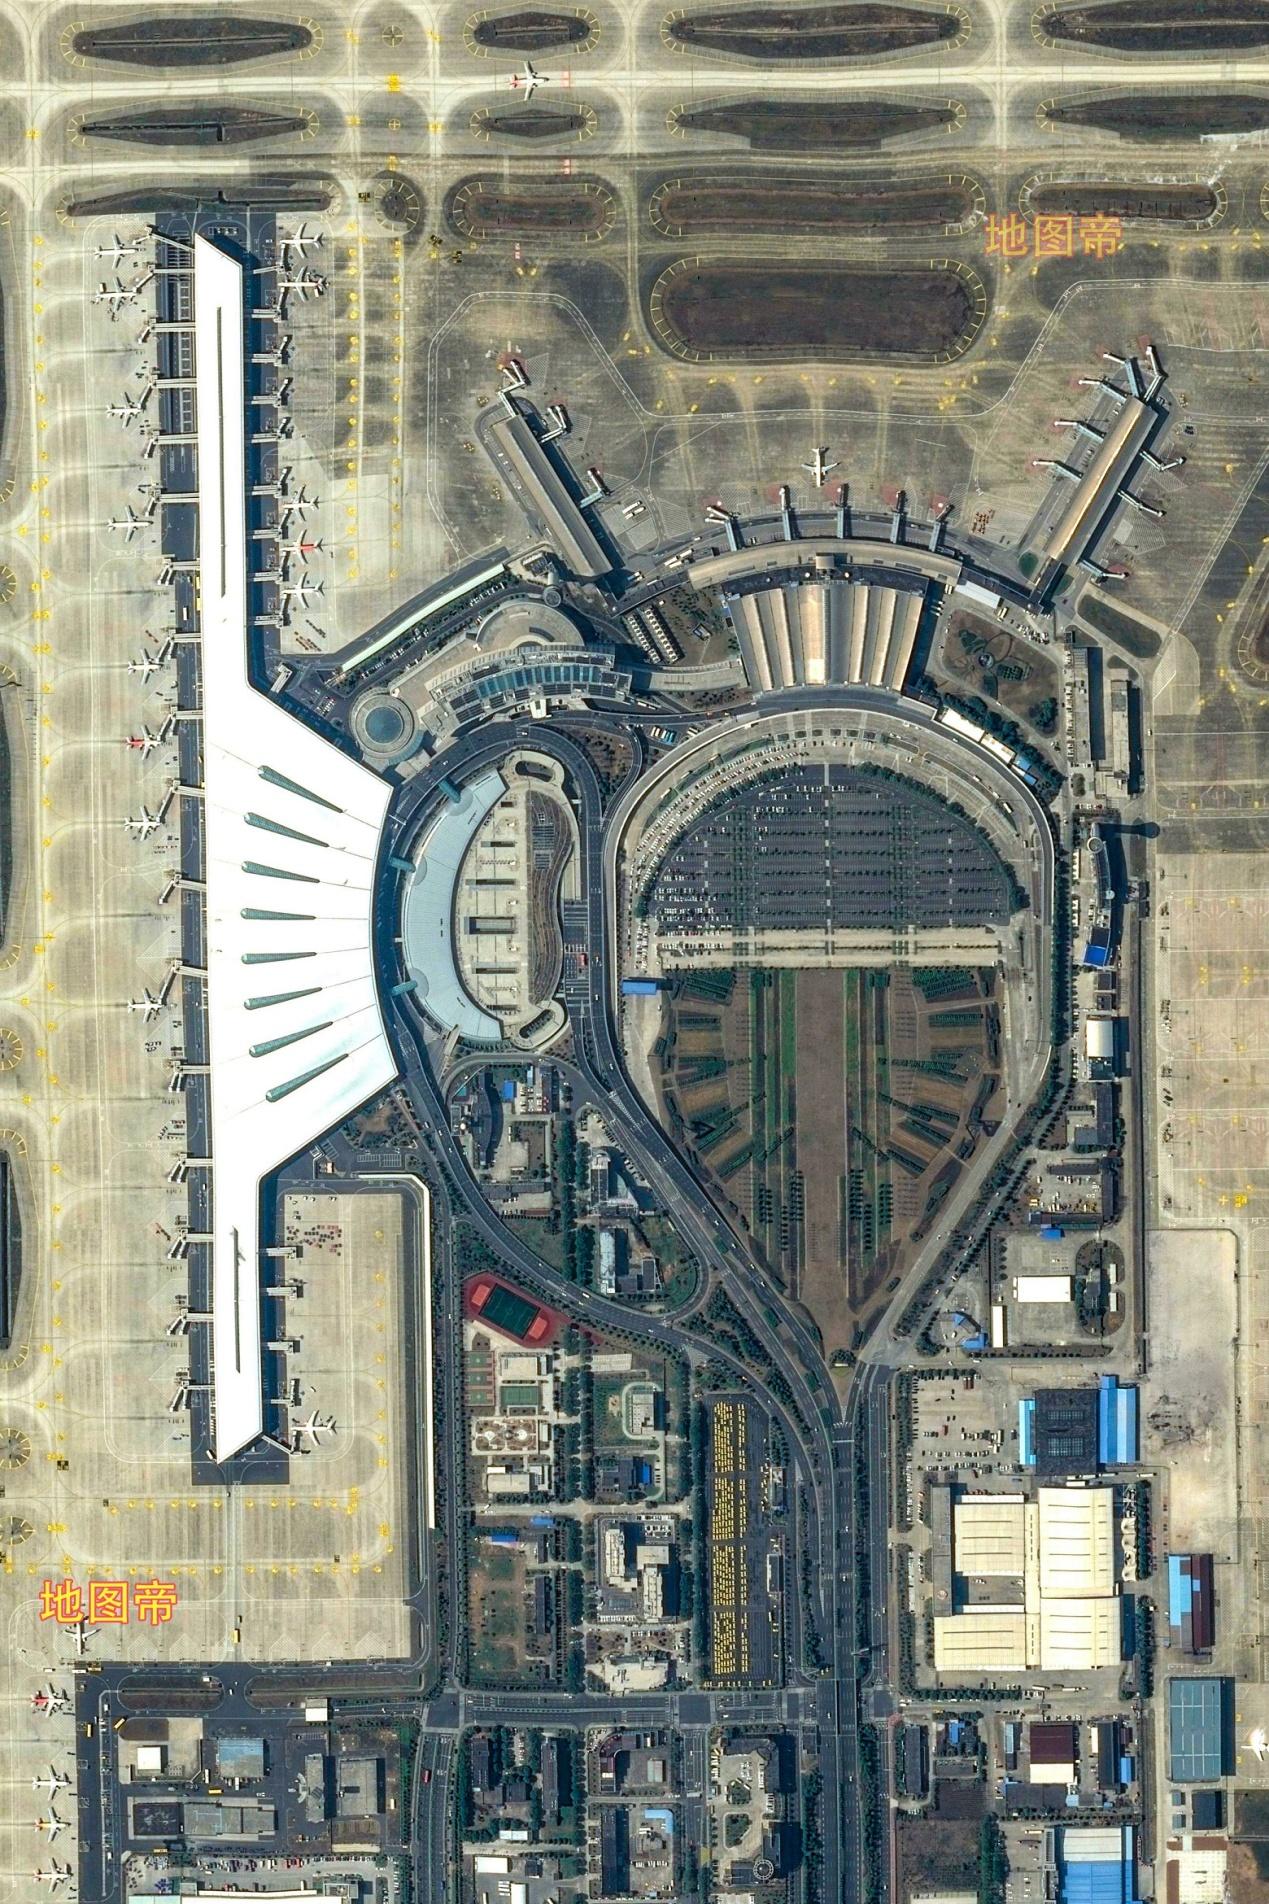 2020年7月30日,南京禄口国际机场t1航站楼改造工程完成后重新投用.